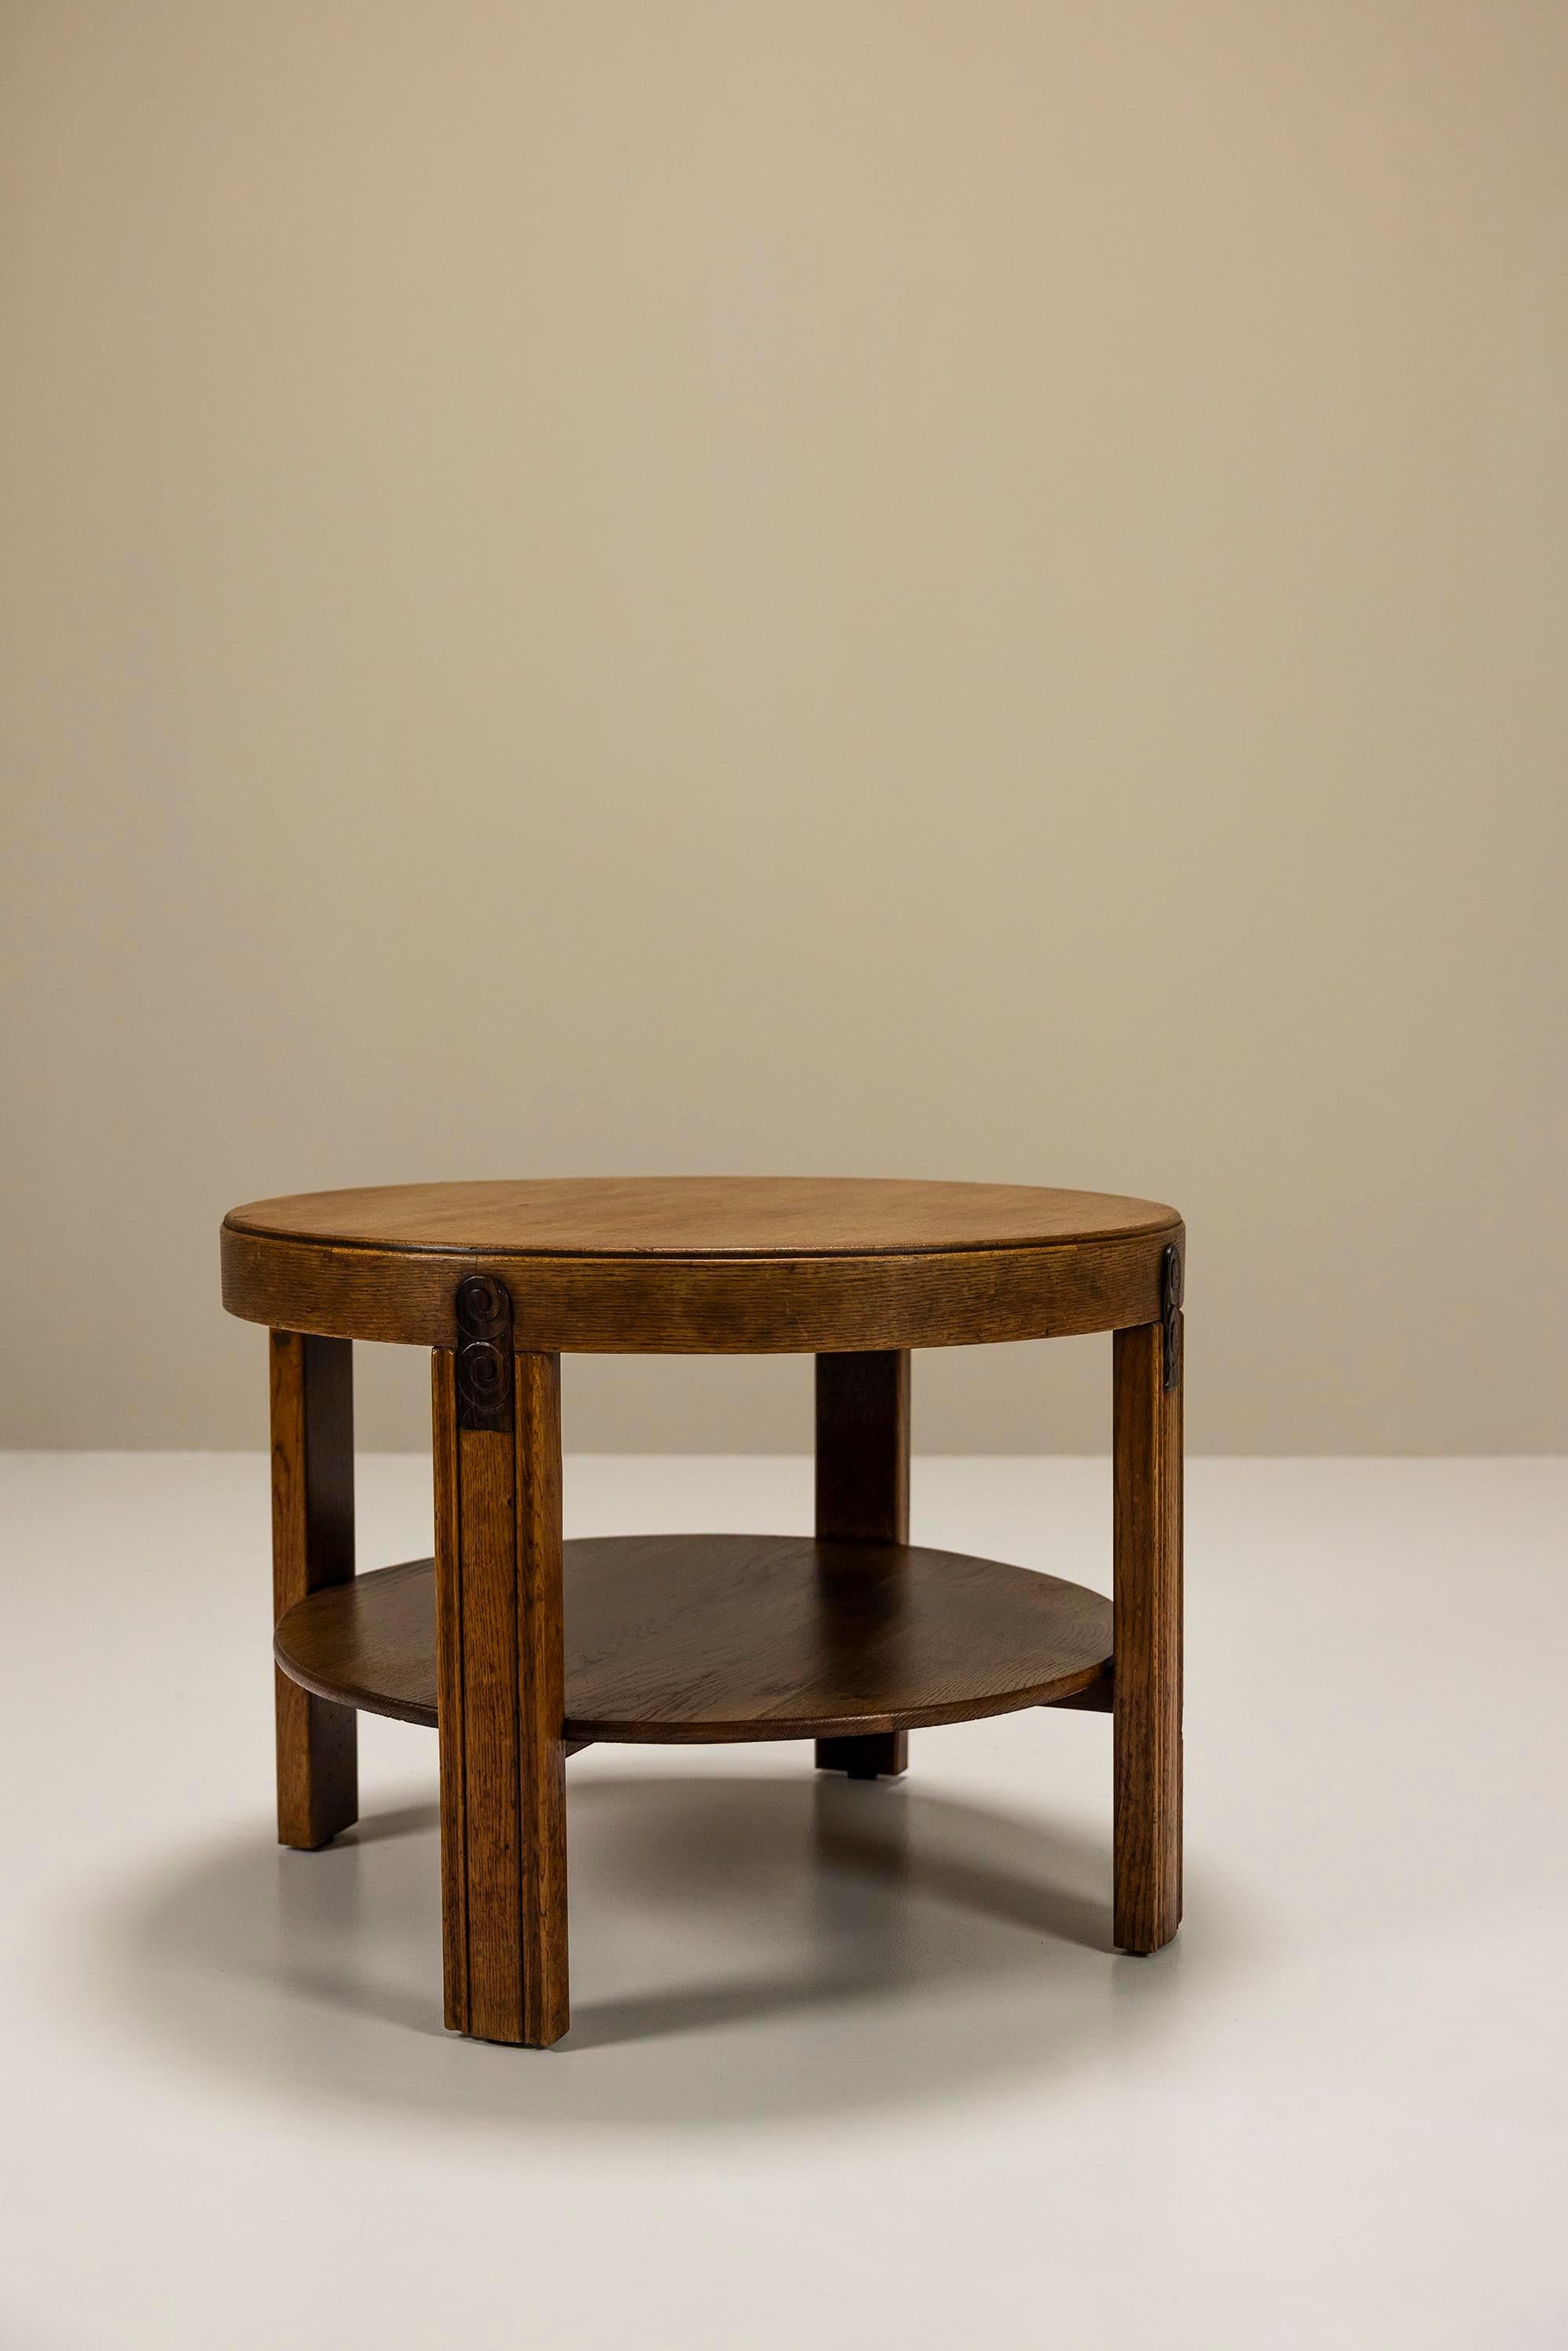 Cette table moderniste est un modèle typique de la période hollandaise d'avant-guerre. Il s'agit d'une table très minimaliste qui ne comporte que des détails subtils. 

Design
Cette table basse ou d'appoint présente des lignes sculptées et gauches